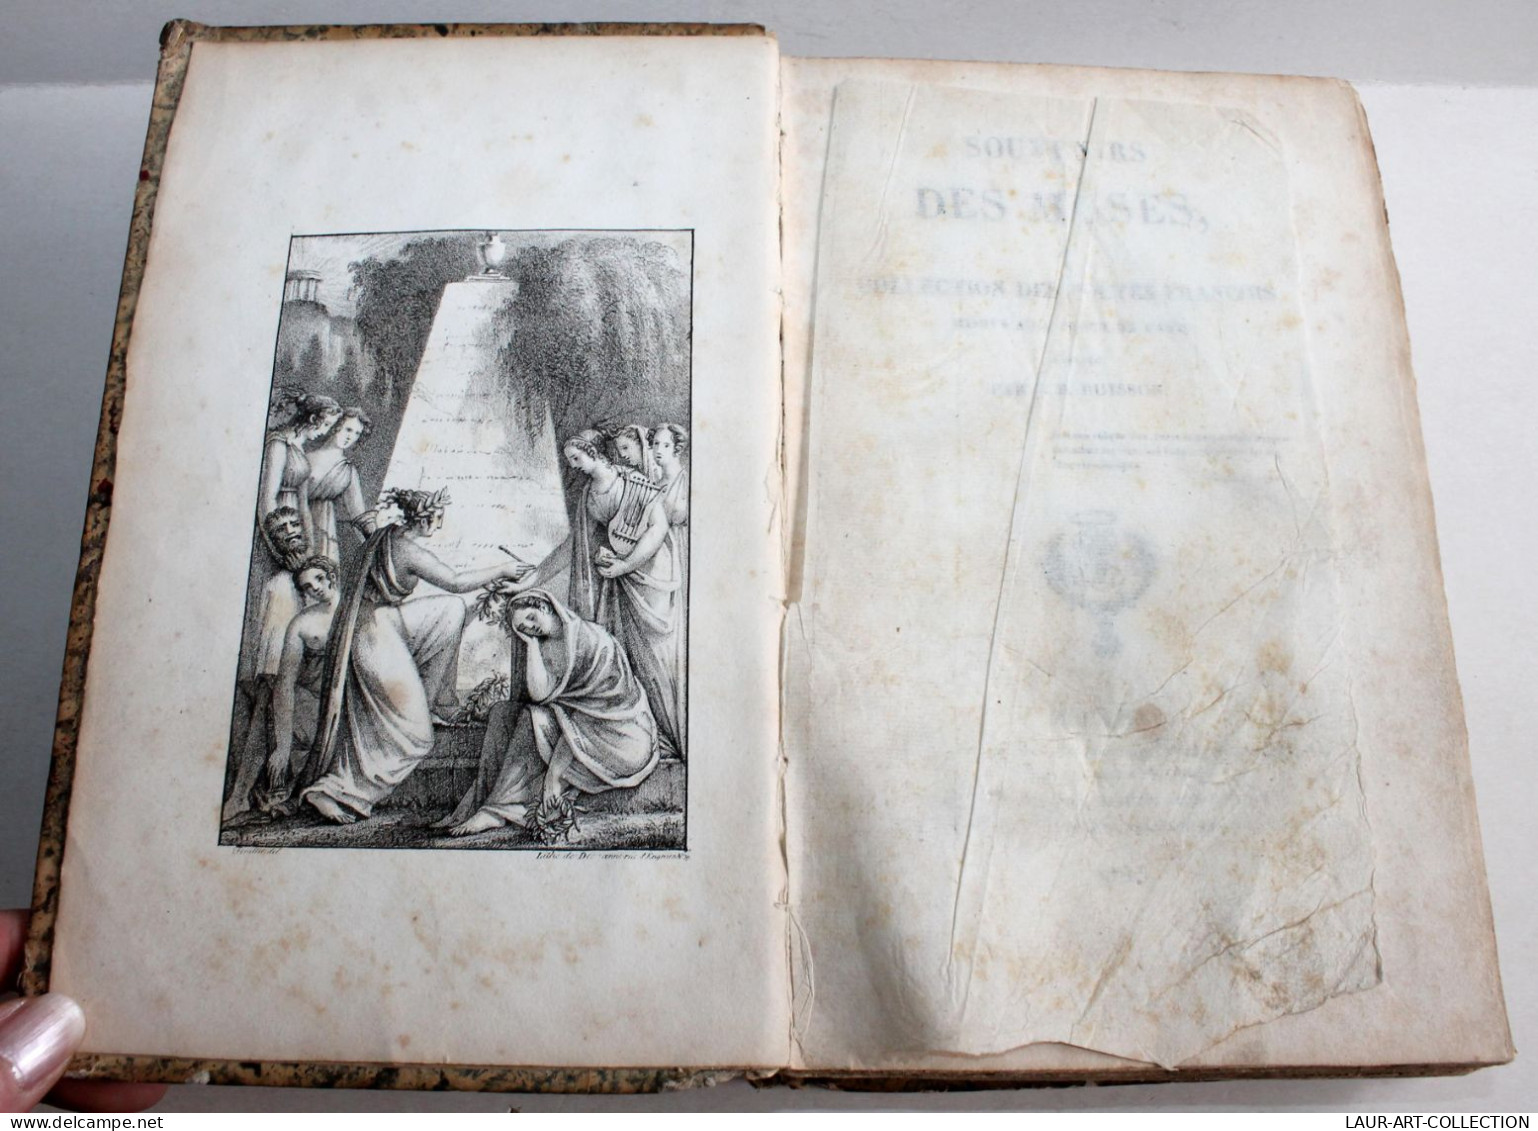 THEATRE, SOUVENIRS DES MUSES Ou COLLECTION DES POETES FRANCOIS De J BUISSON 1823 / ANCIEN LIVRE XIXe SIECLE (1803.110) - Autores Franceses